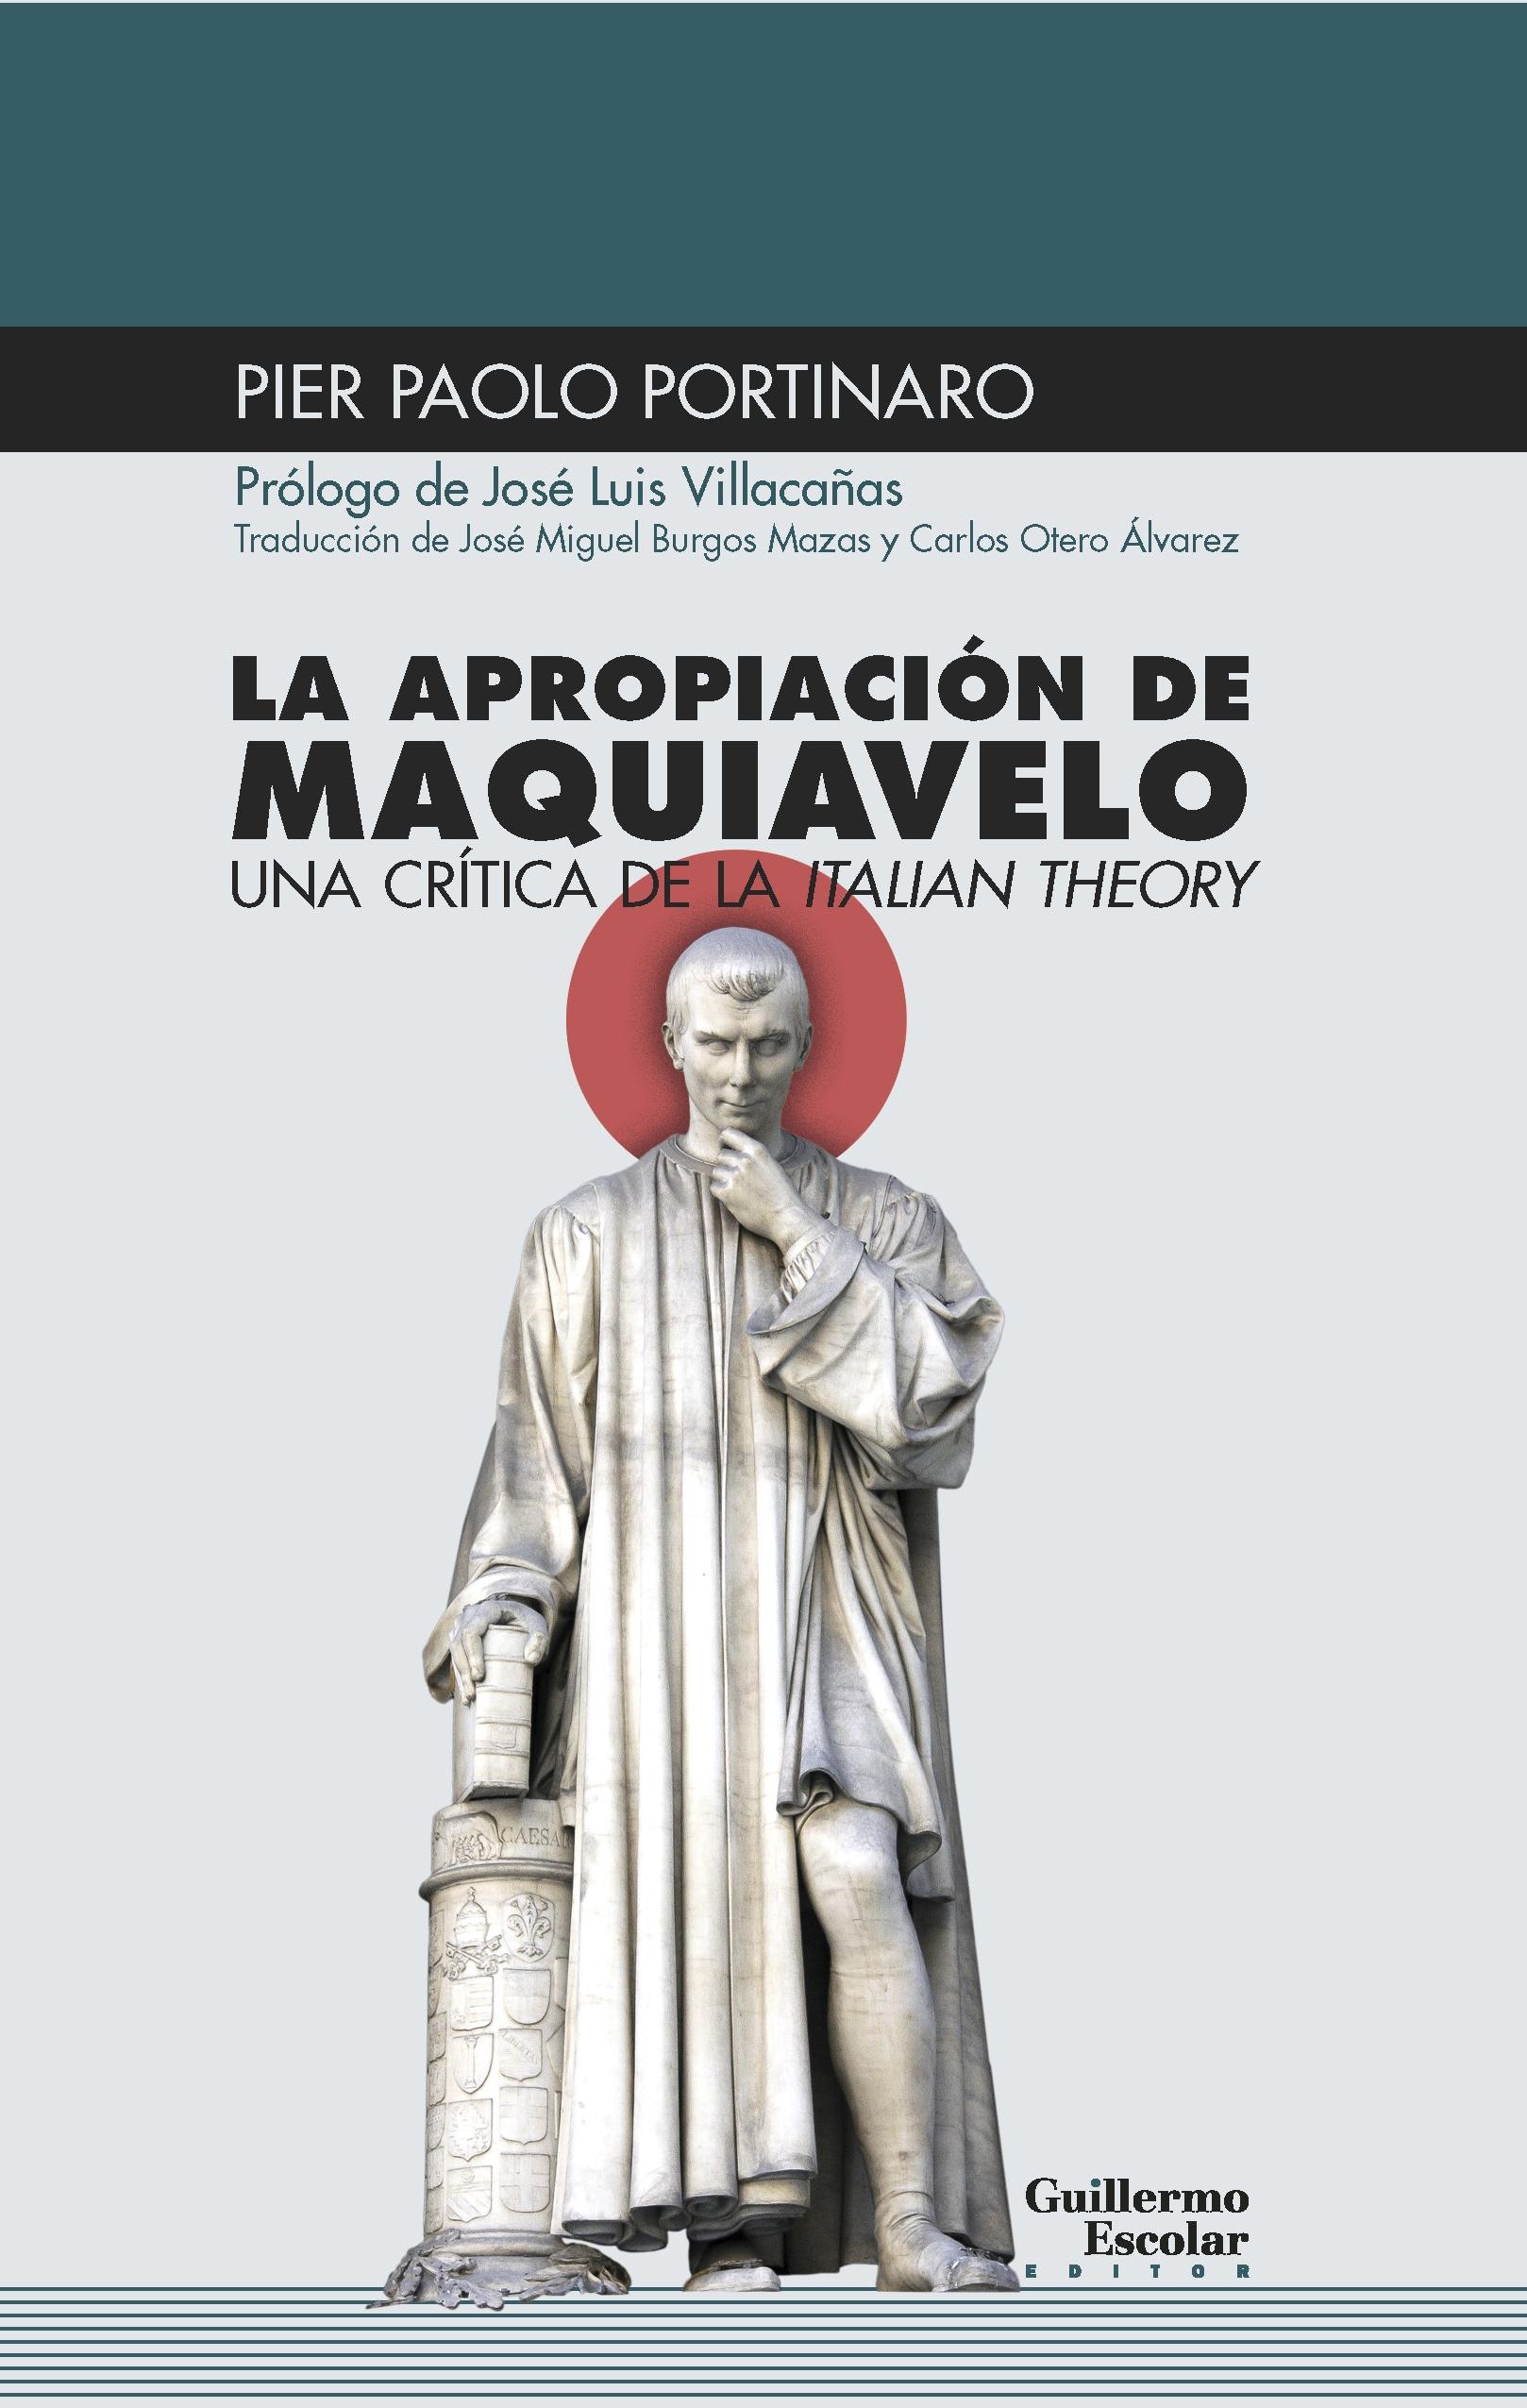 La apropiación de Maquiavelo "Una crítica de la 'Italian Theory'"